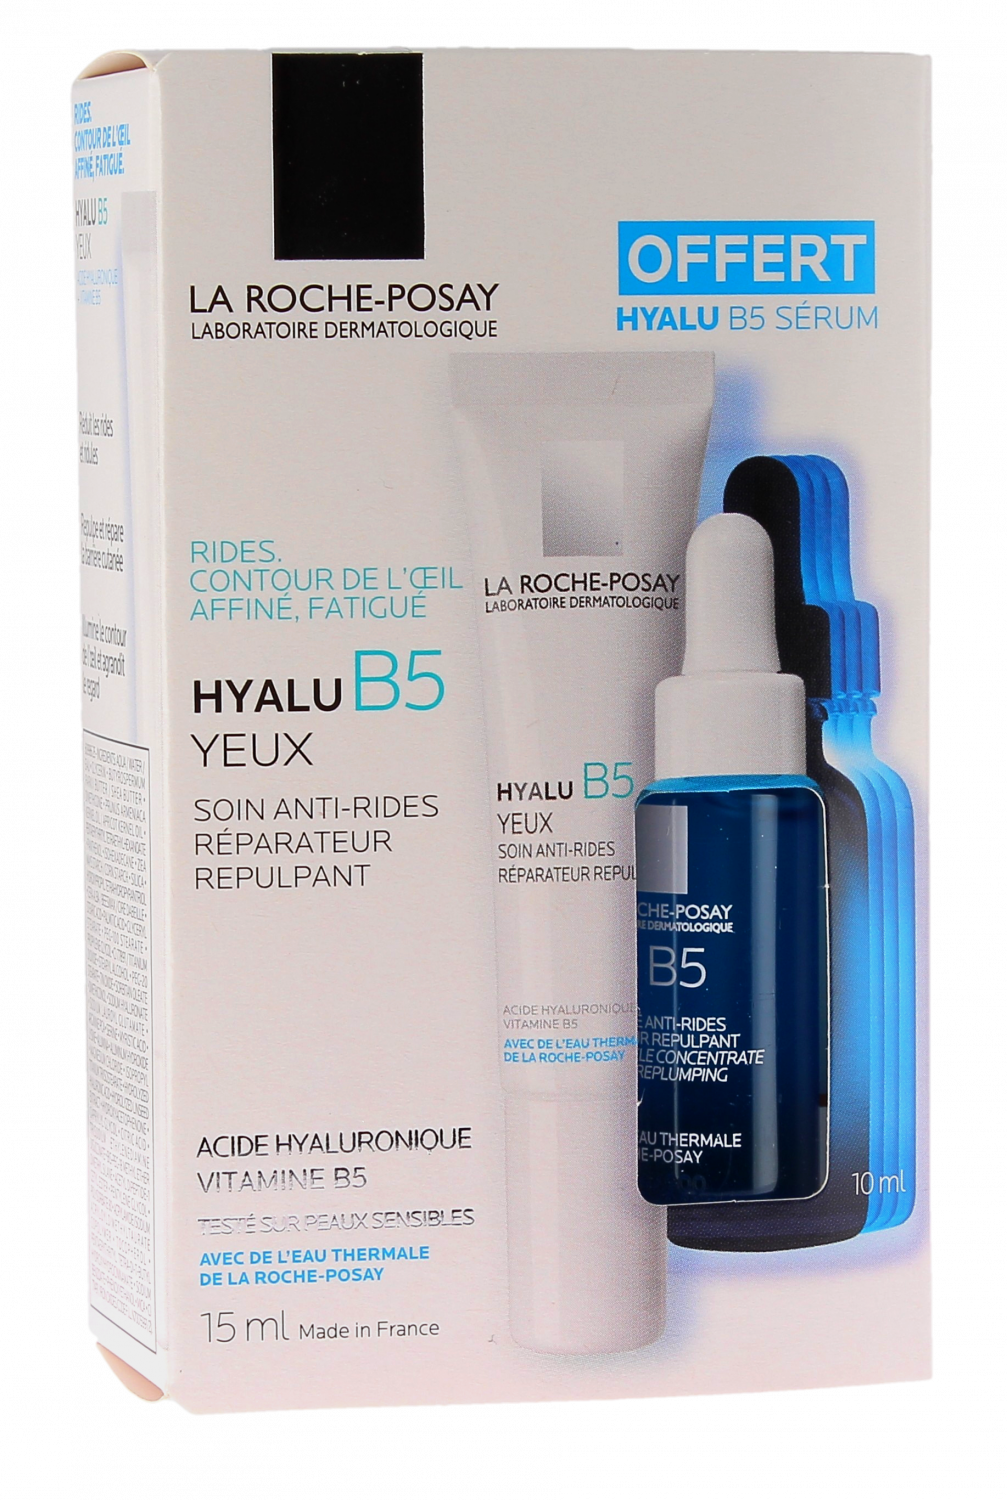 Hyalu B5 Coffret crème contour des yeux anti rides + sérum offert La Roche-Posay - coffret de 2 produits